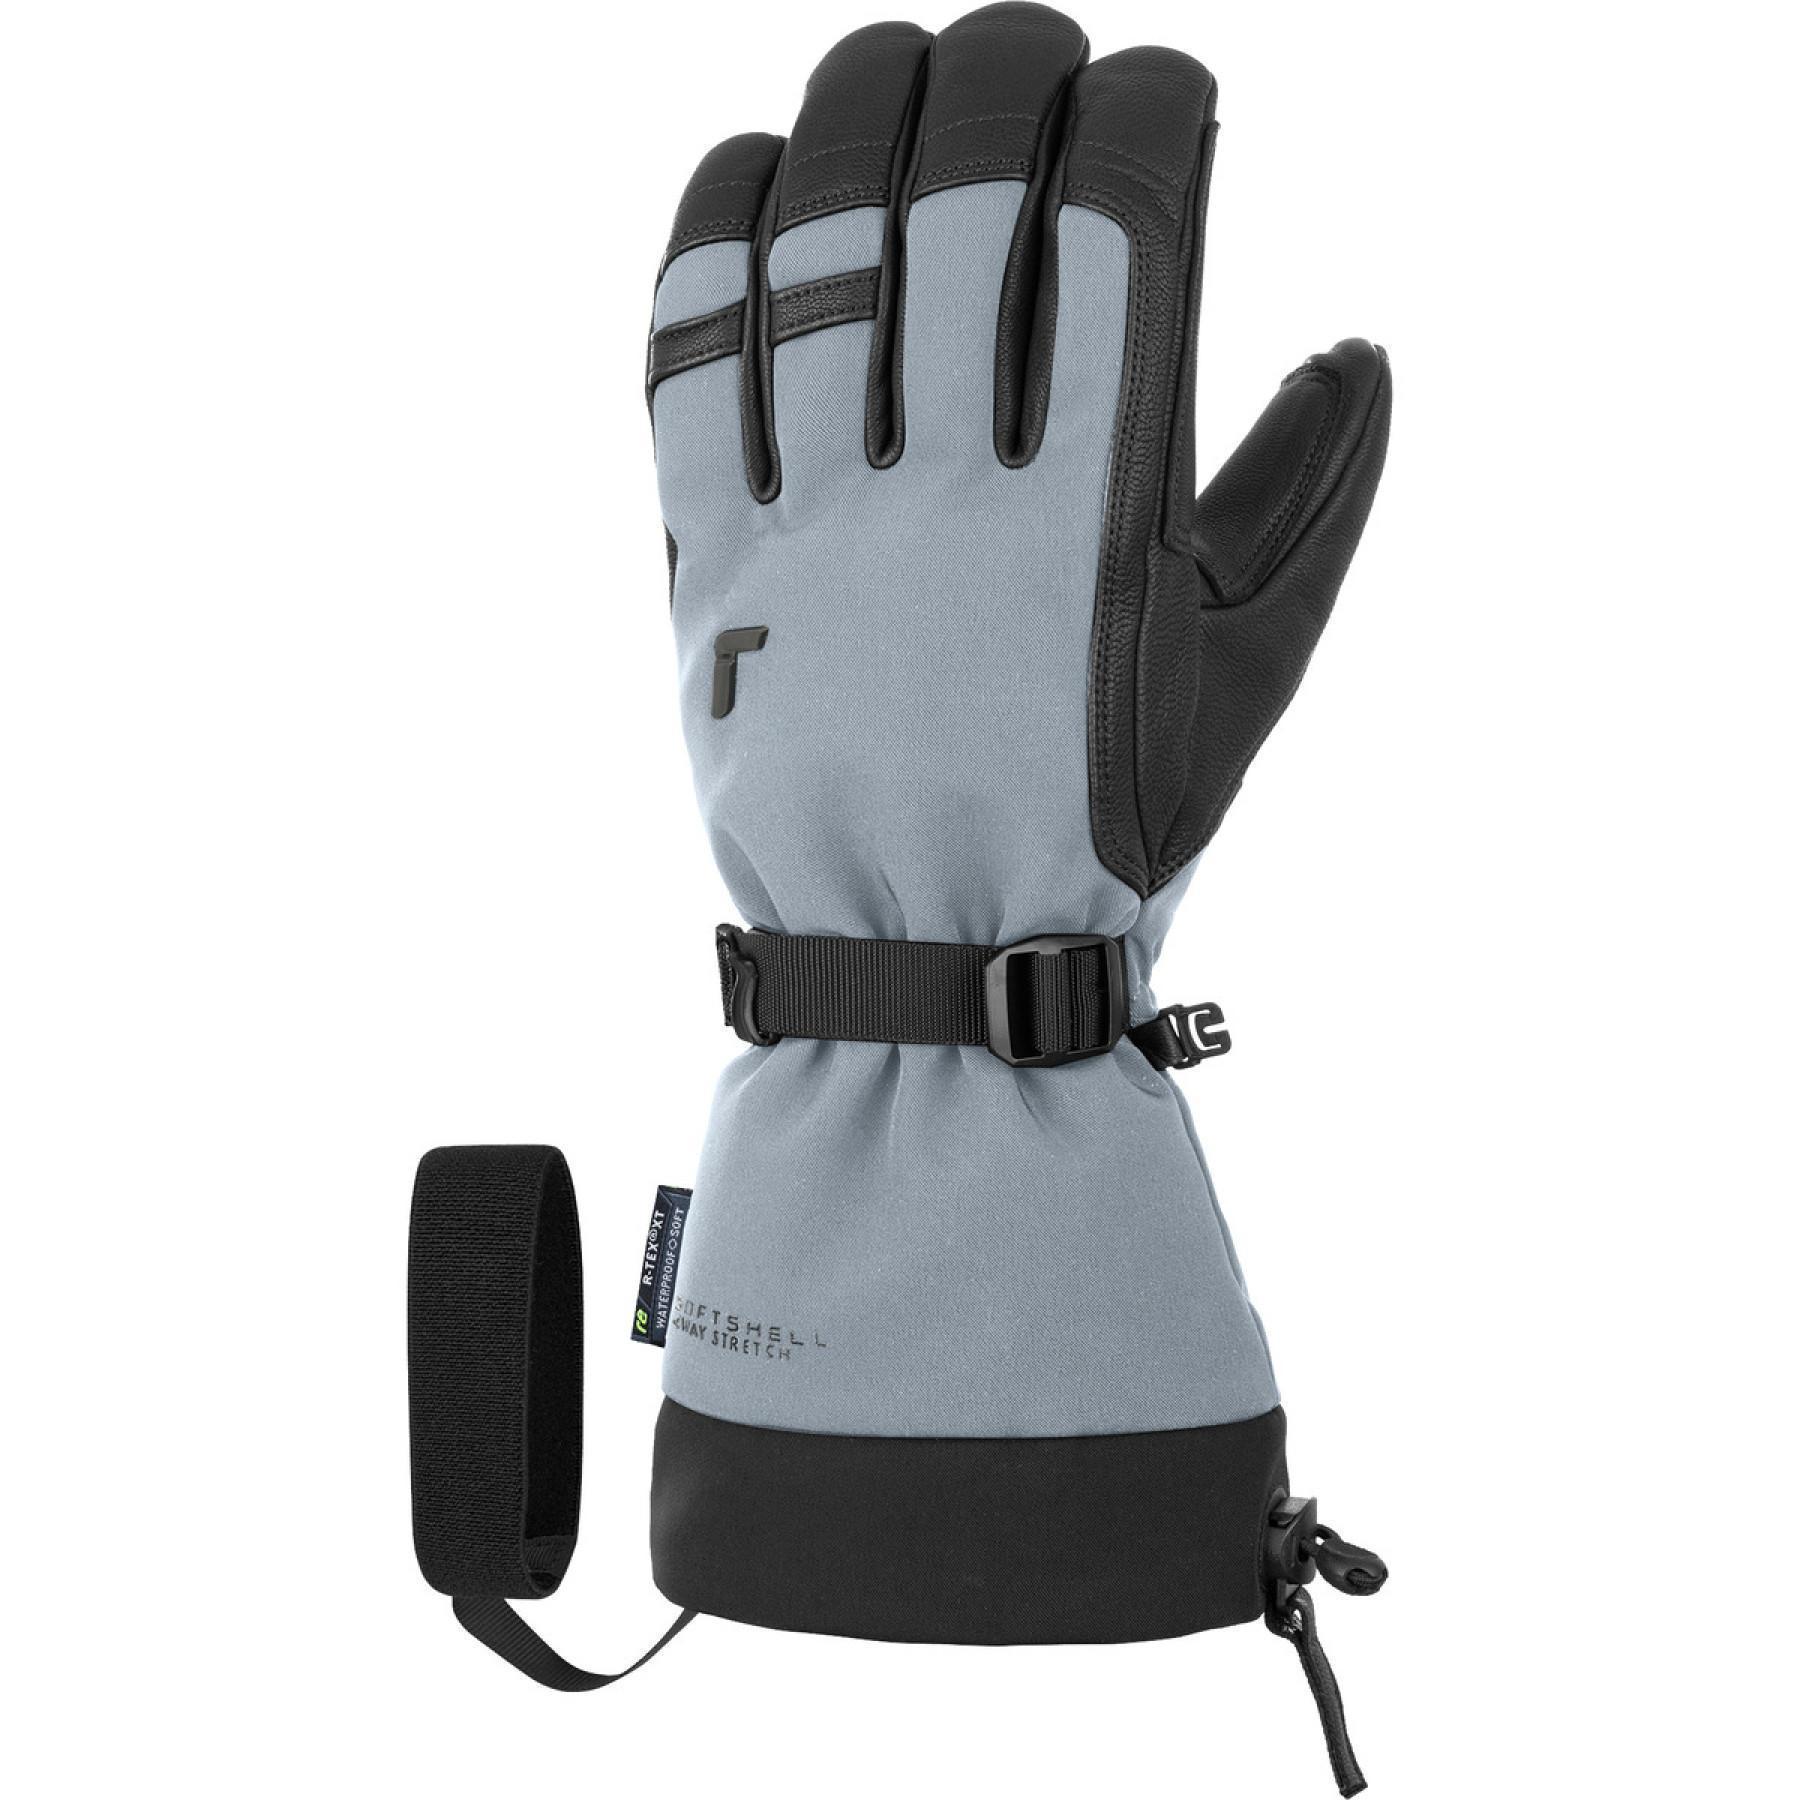 Handschoenen Reusch Explorer Pro R-tex® Pcr Xt Lc